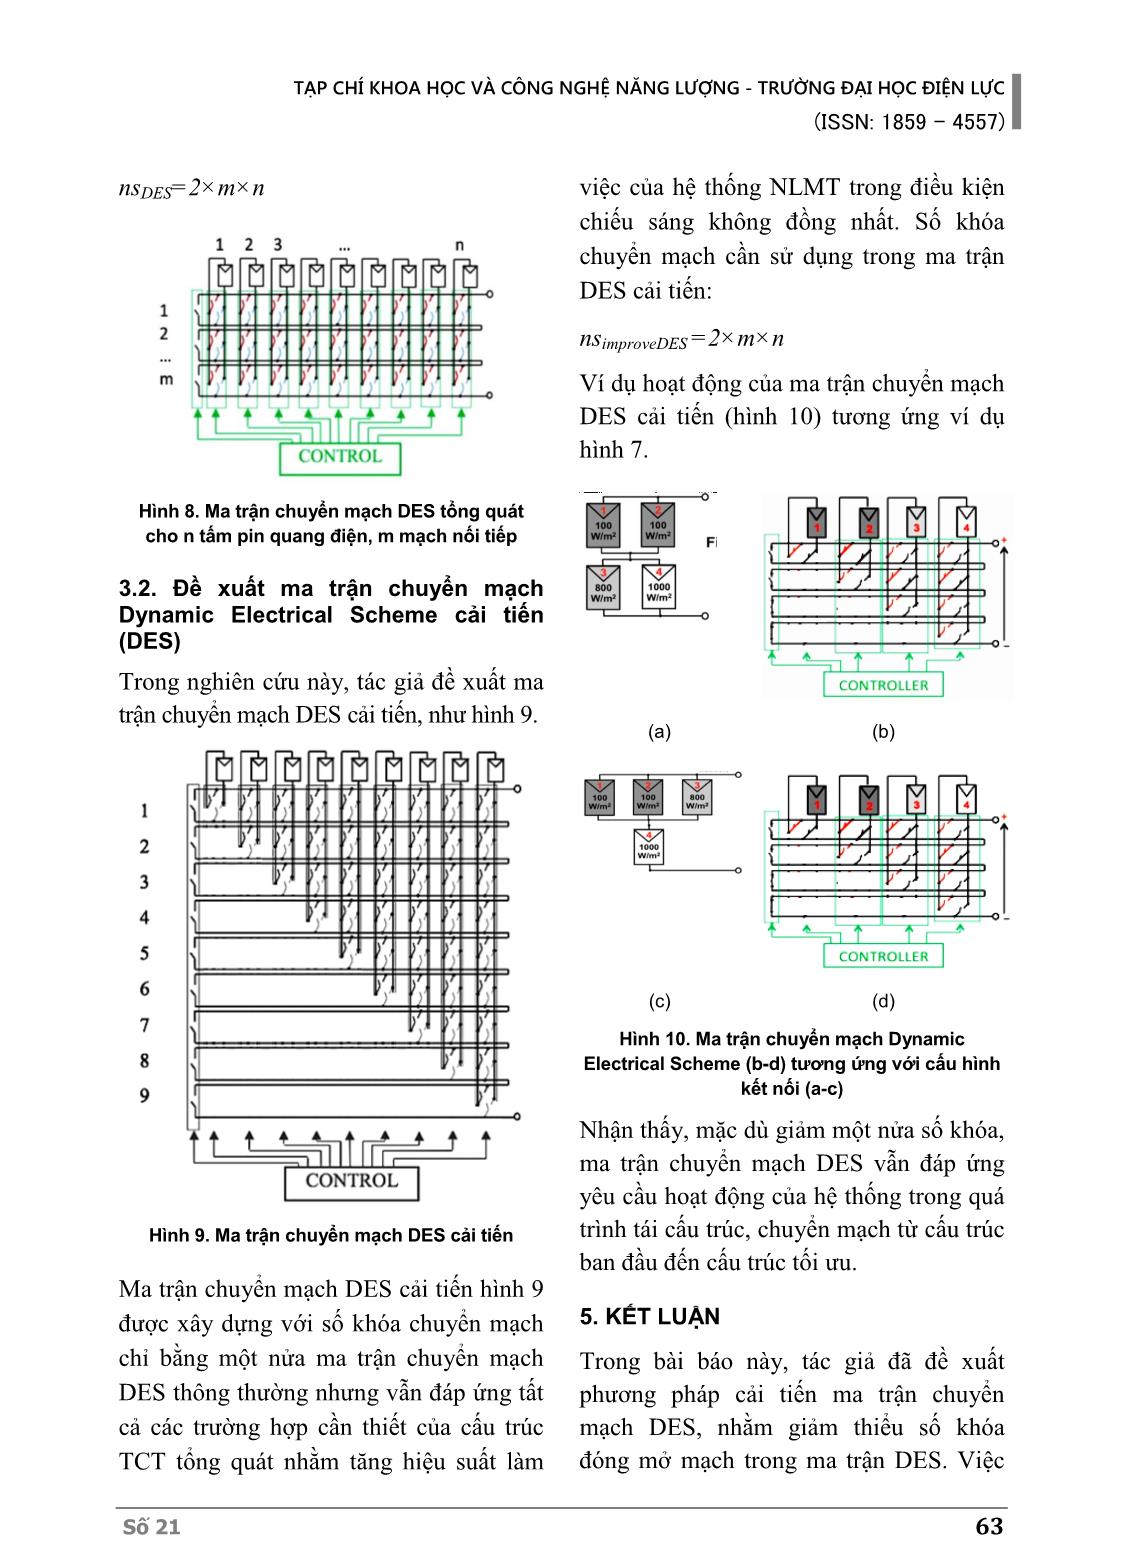 Phương pháp tối ưu ma trận chuyển mạch trong chiến lược tái cấu trúc kết nối các tấm pin quang điện trang 6